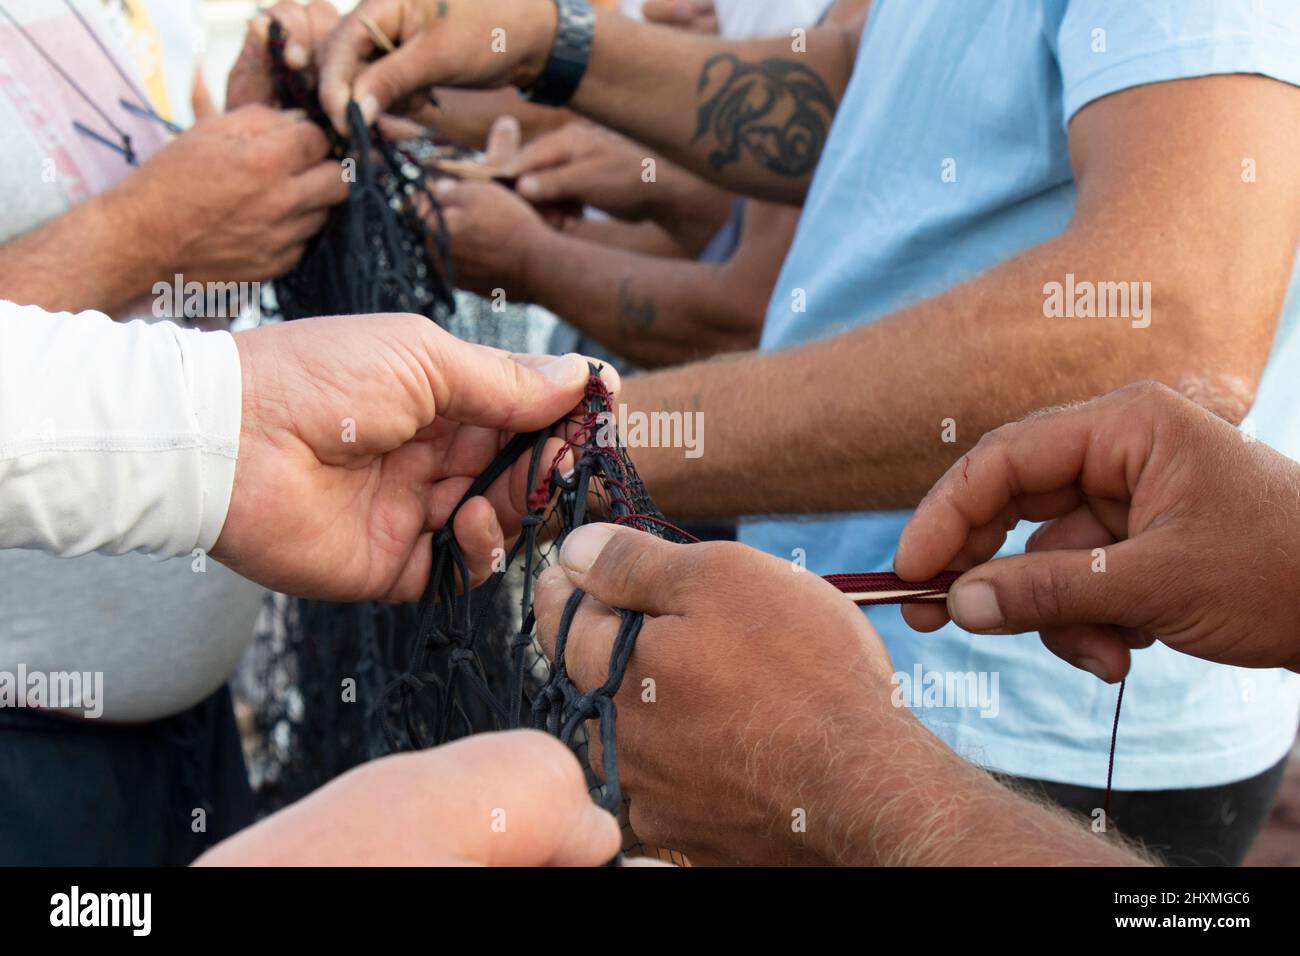 Tribunj, Croacia - 23 de agosto de 2021: Grupo de pescadores reparando la red de pesca, trabajando con las manos de cerca de detalles Foto de stock